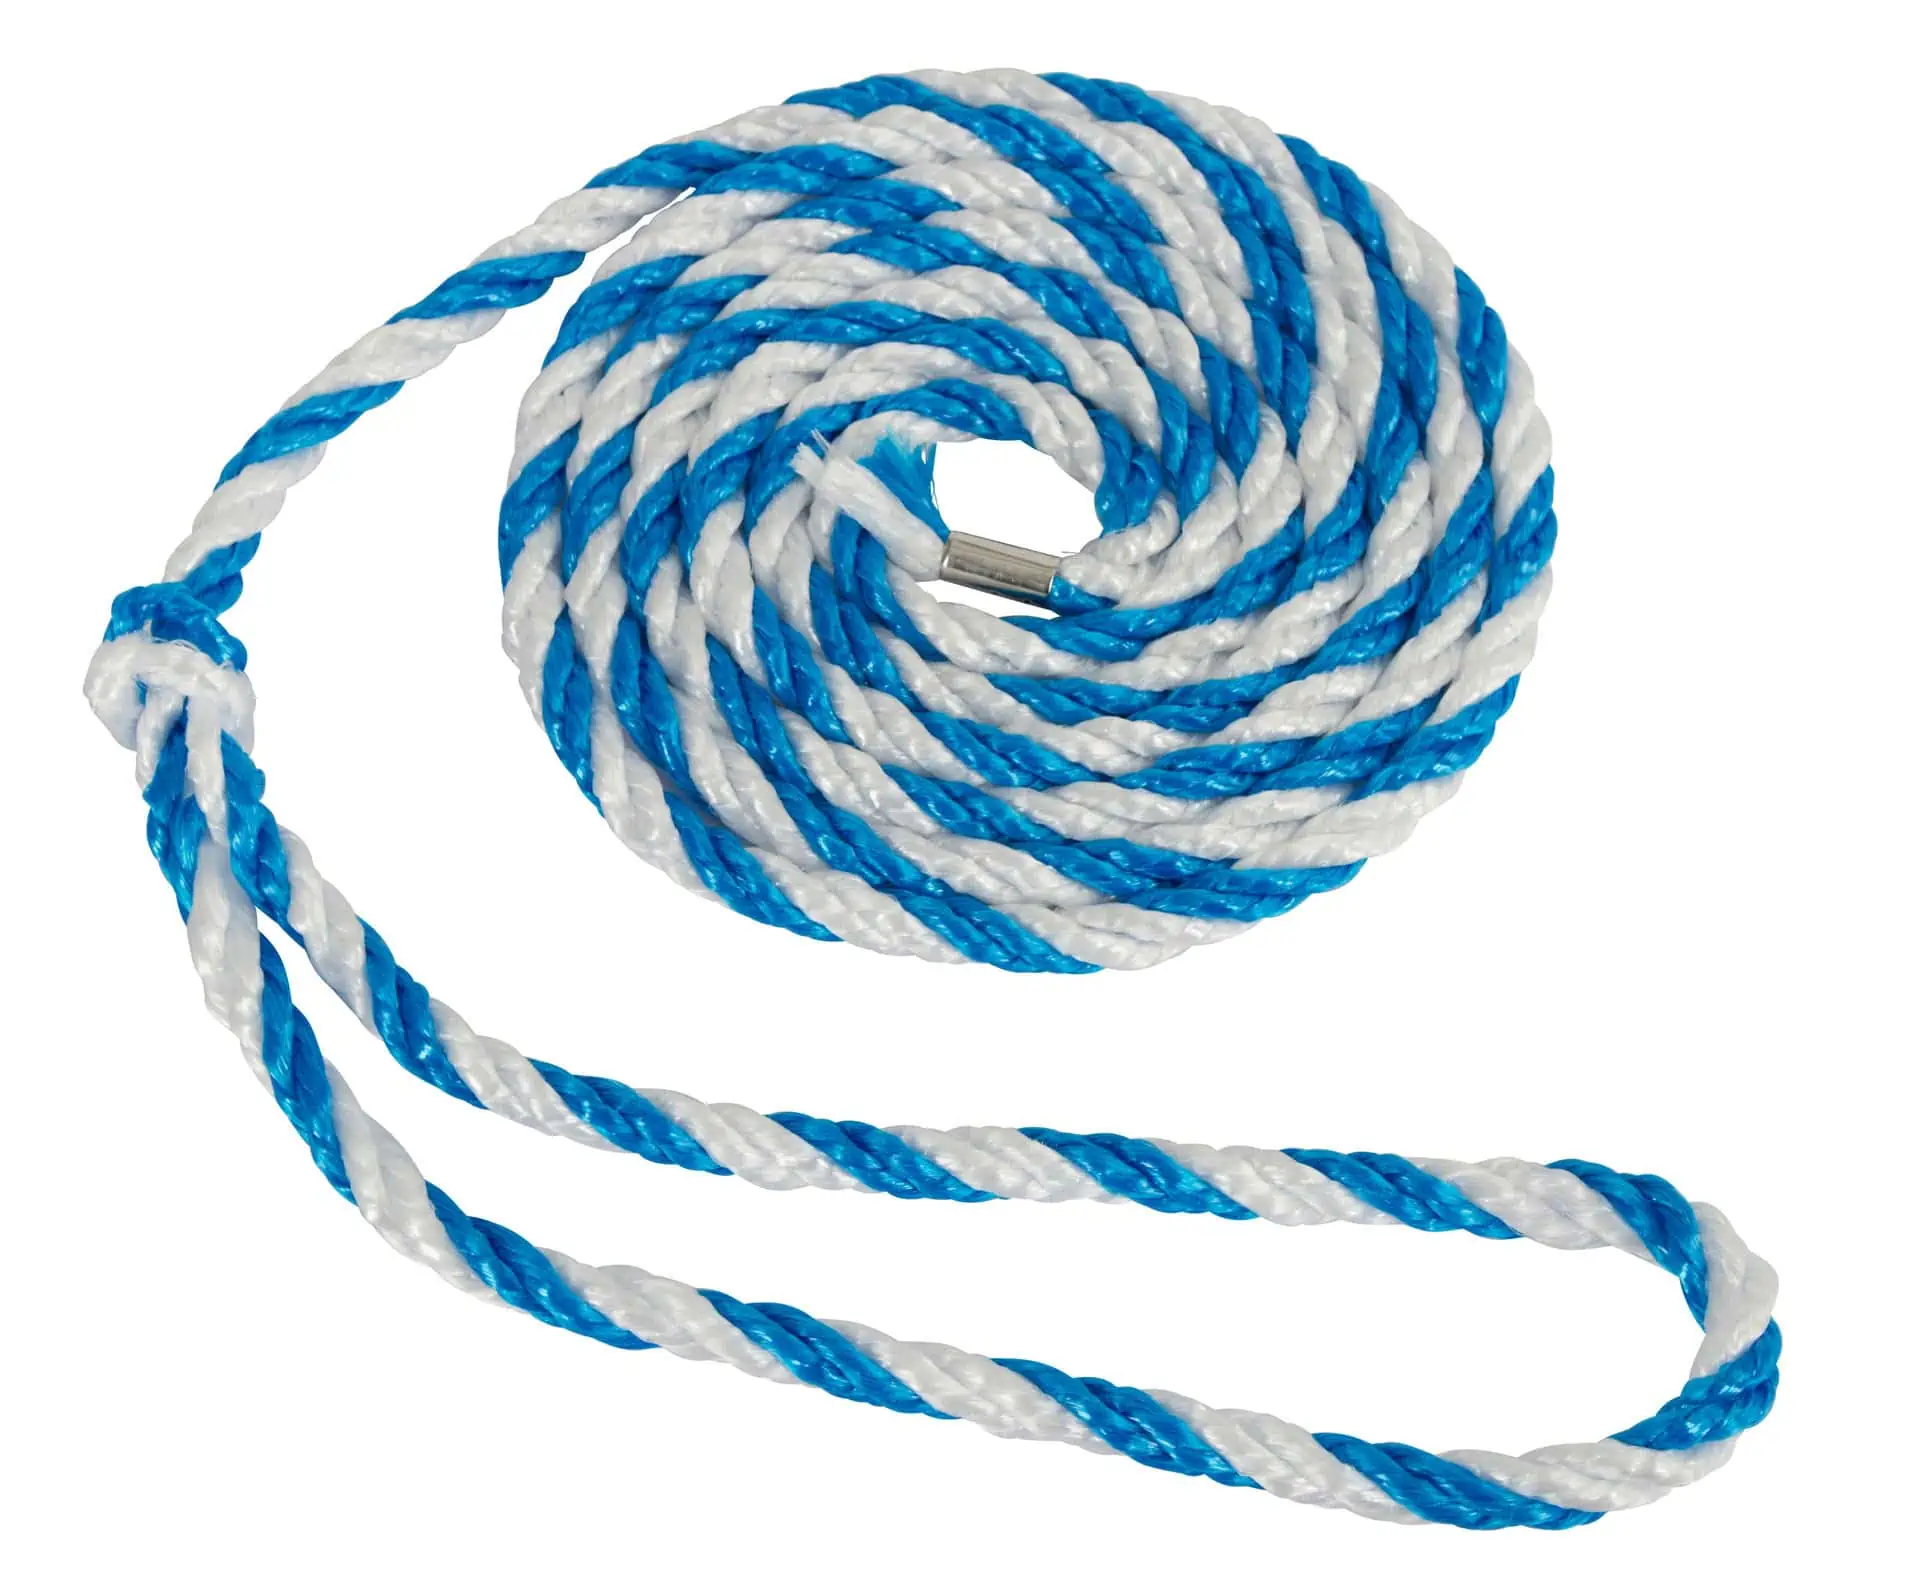 Állatszállító kötél nagy hurok kék-fehér 3,2 m